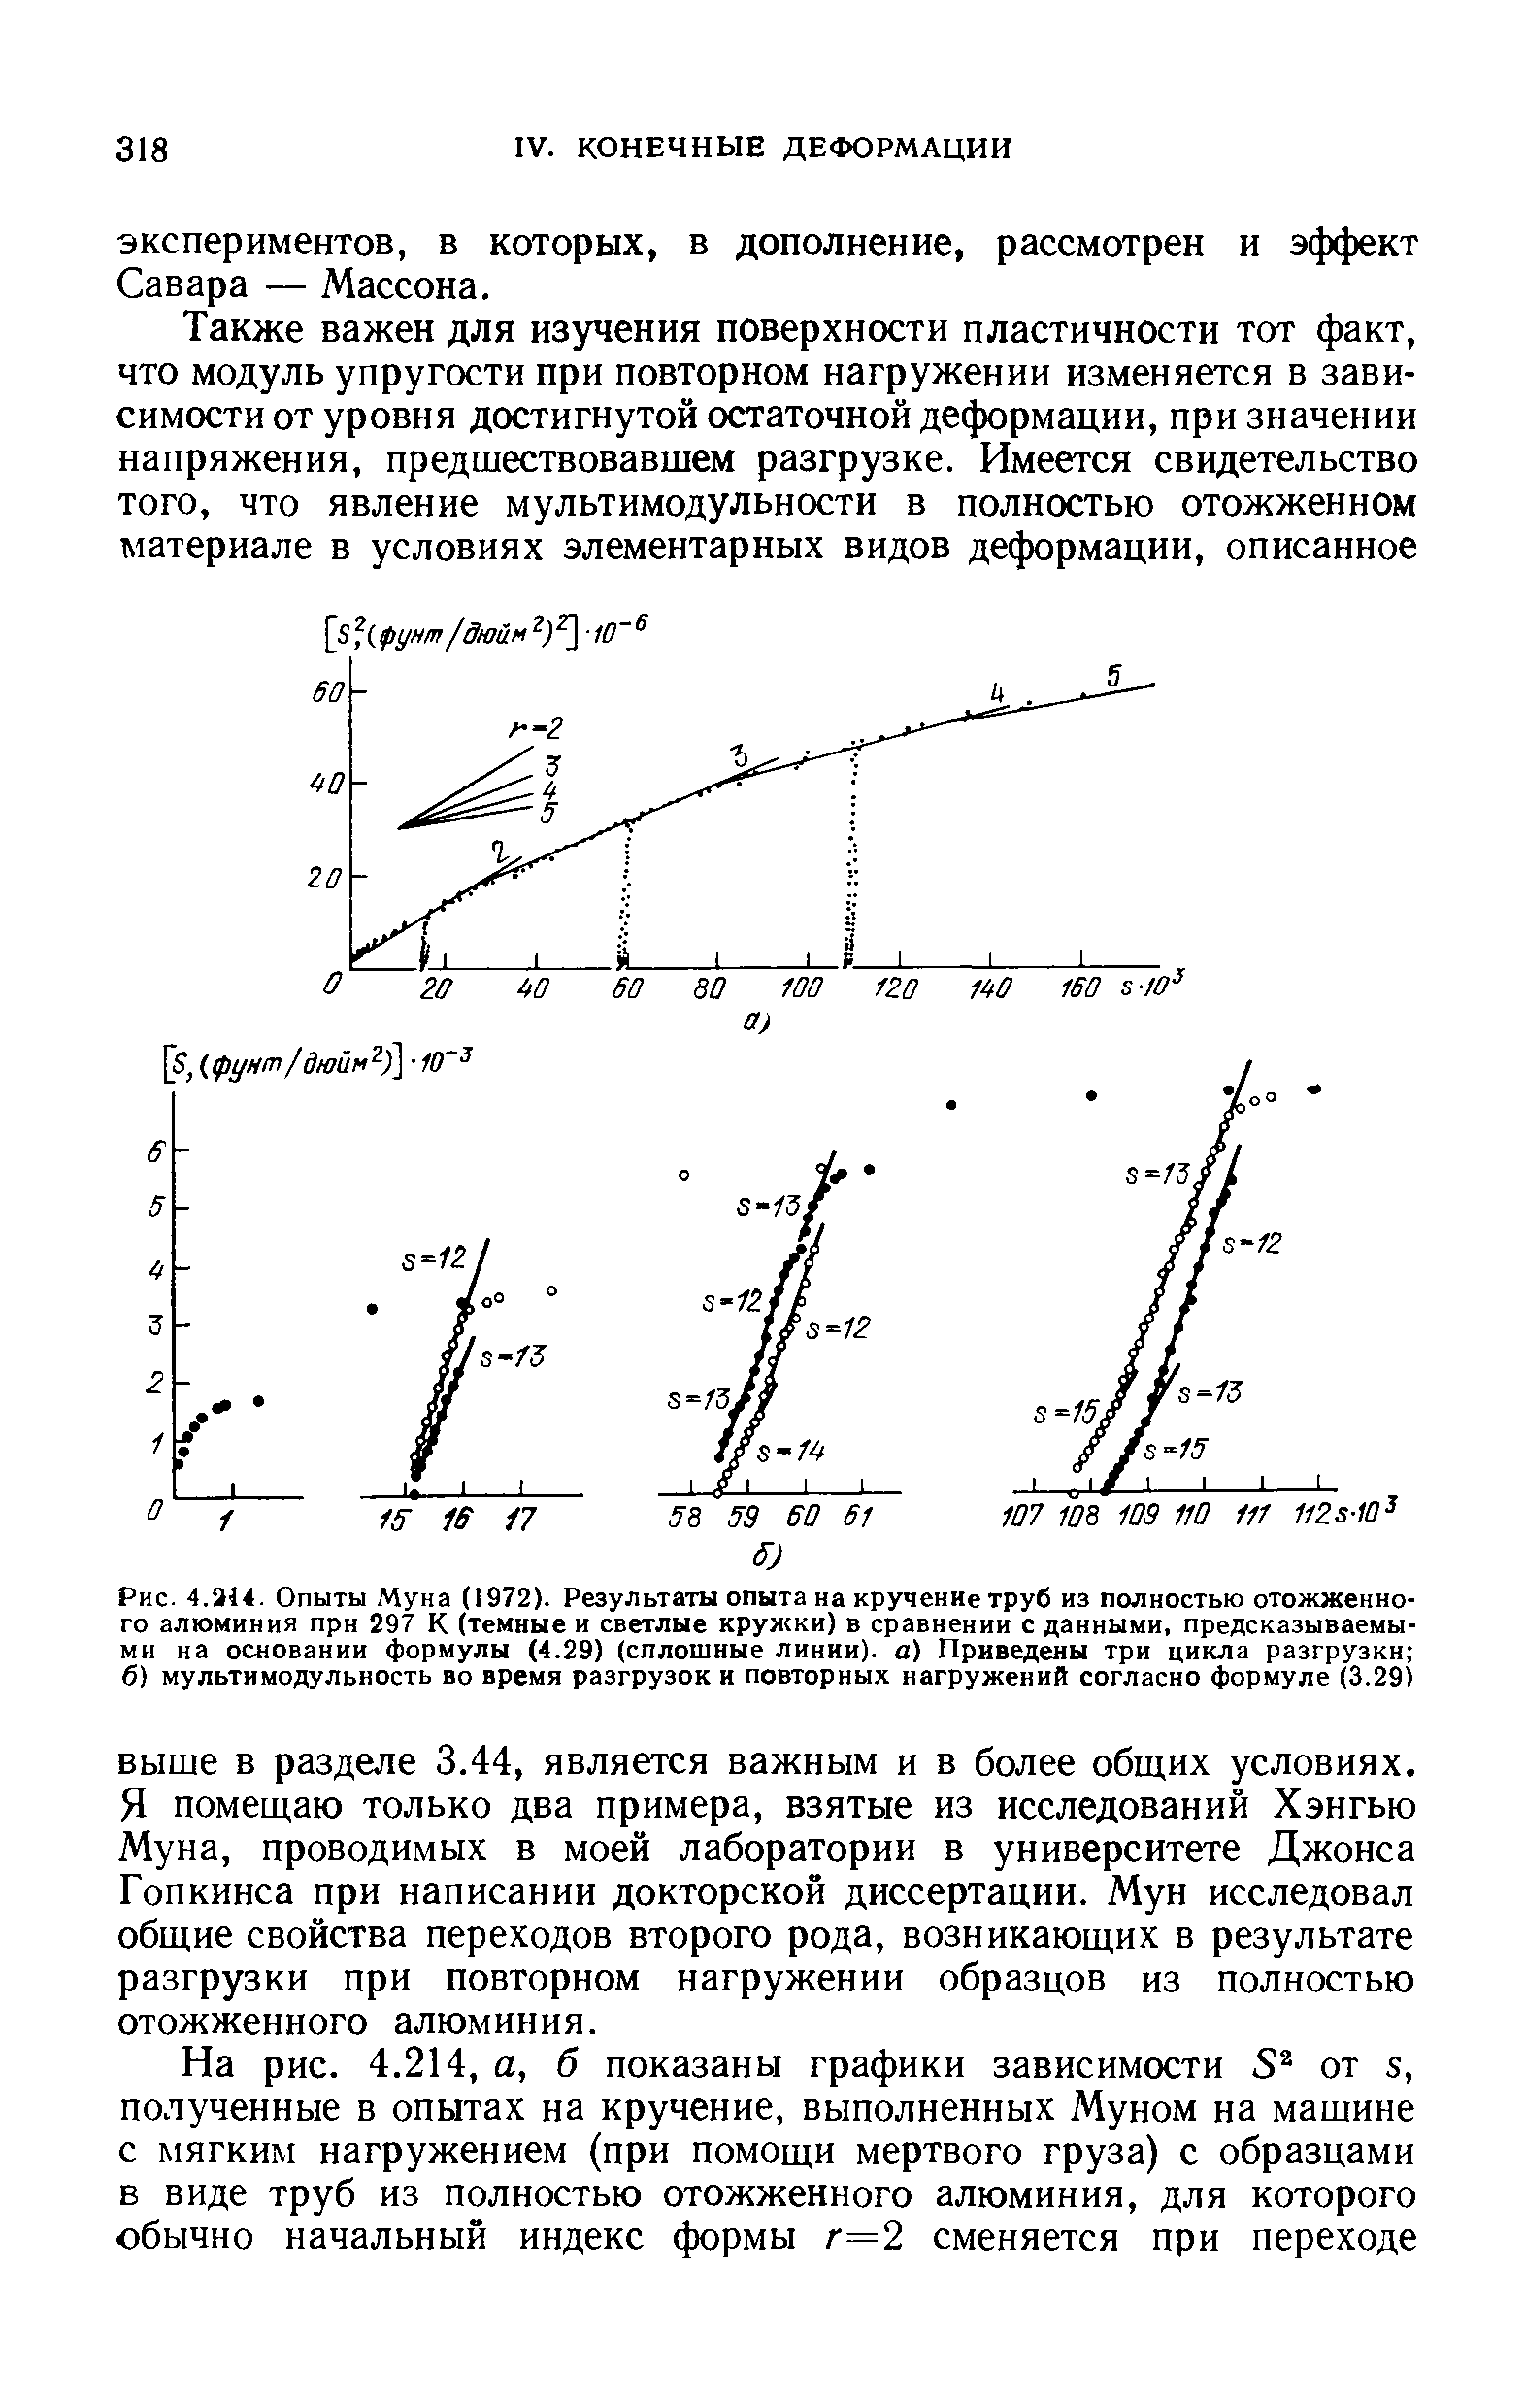 Рис. 4.314. Опыты Муна (1972). Результаты опыта на <a href="/info/247900">кручение труб</a> из полностью отожженного алюминия при 297 К (темные и светлые кружки) в сравнении с данными, предсказываемыми на основании формулы (4.29) (<a href="/info/232485">сплошные линии</a>), а) Приведены три цикла разгрузки б) мультимодульность во время разгрузок и <a href="/info/39301">повторных нагружений</a> согласно формуле (3.29)
